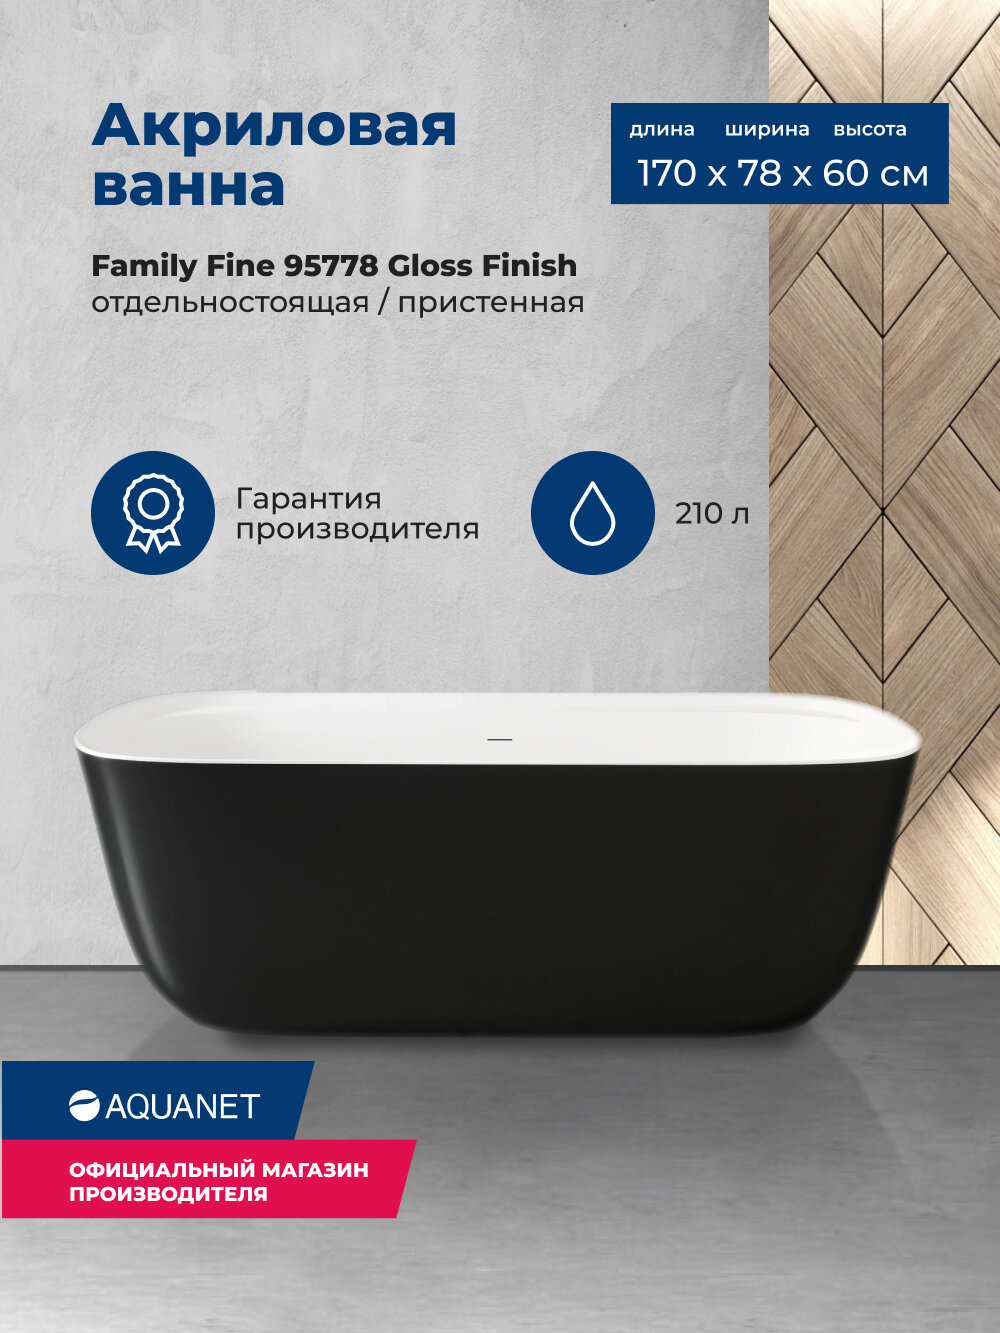 Акриловая ванна Aquanet Family Fine 170x78 95778 Gloss Finish (панель Black matte) - фото №1